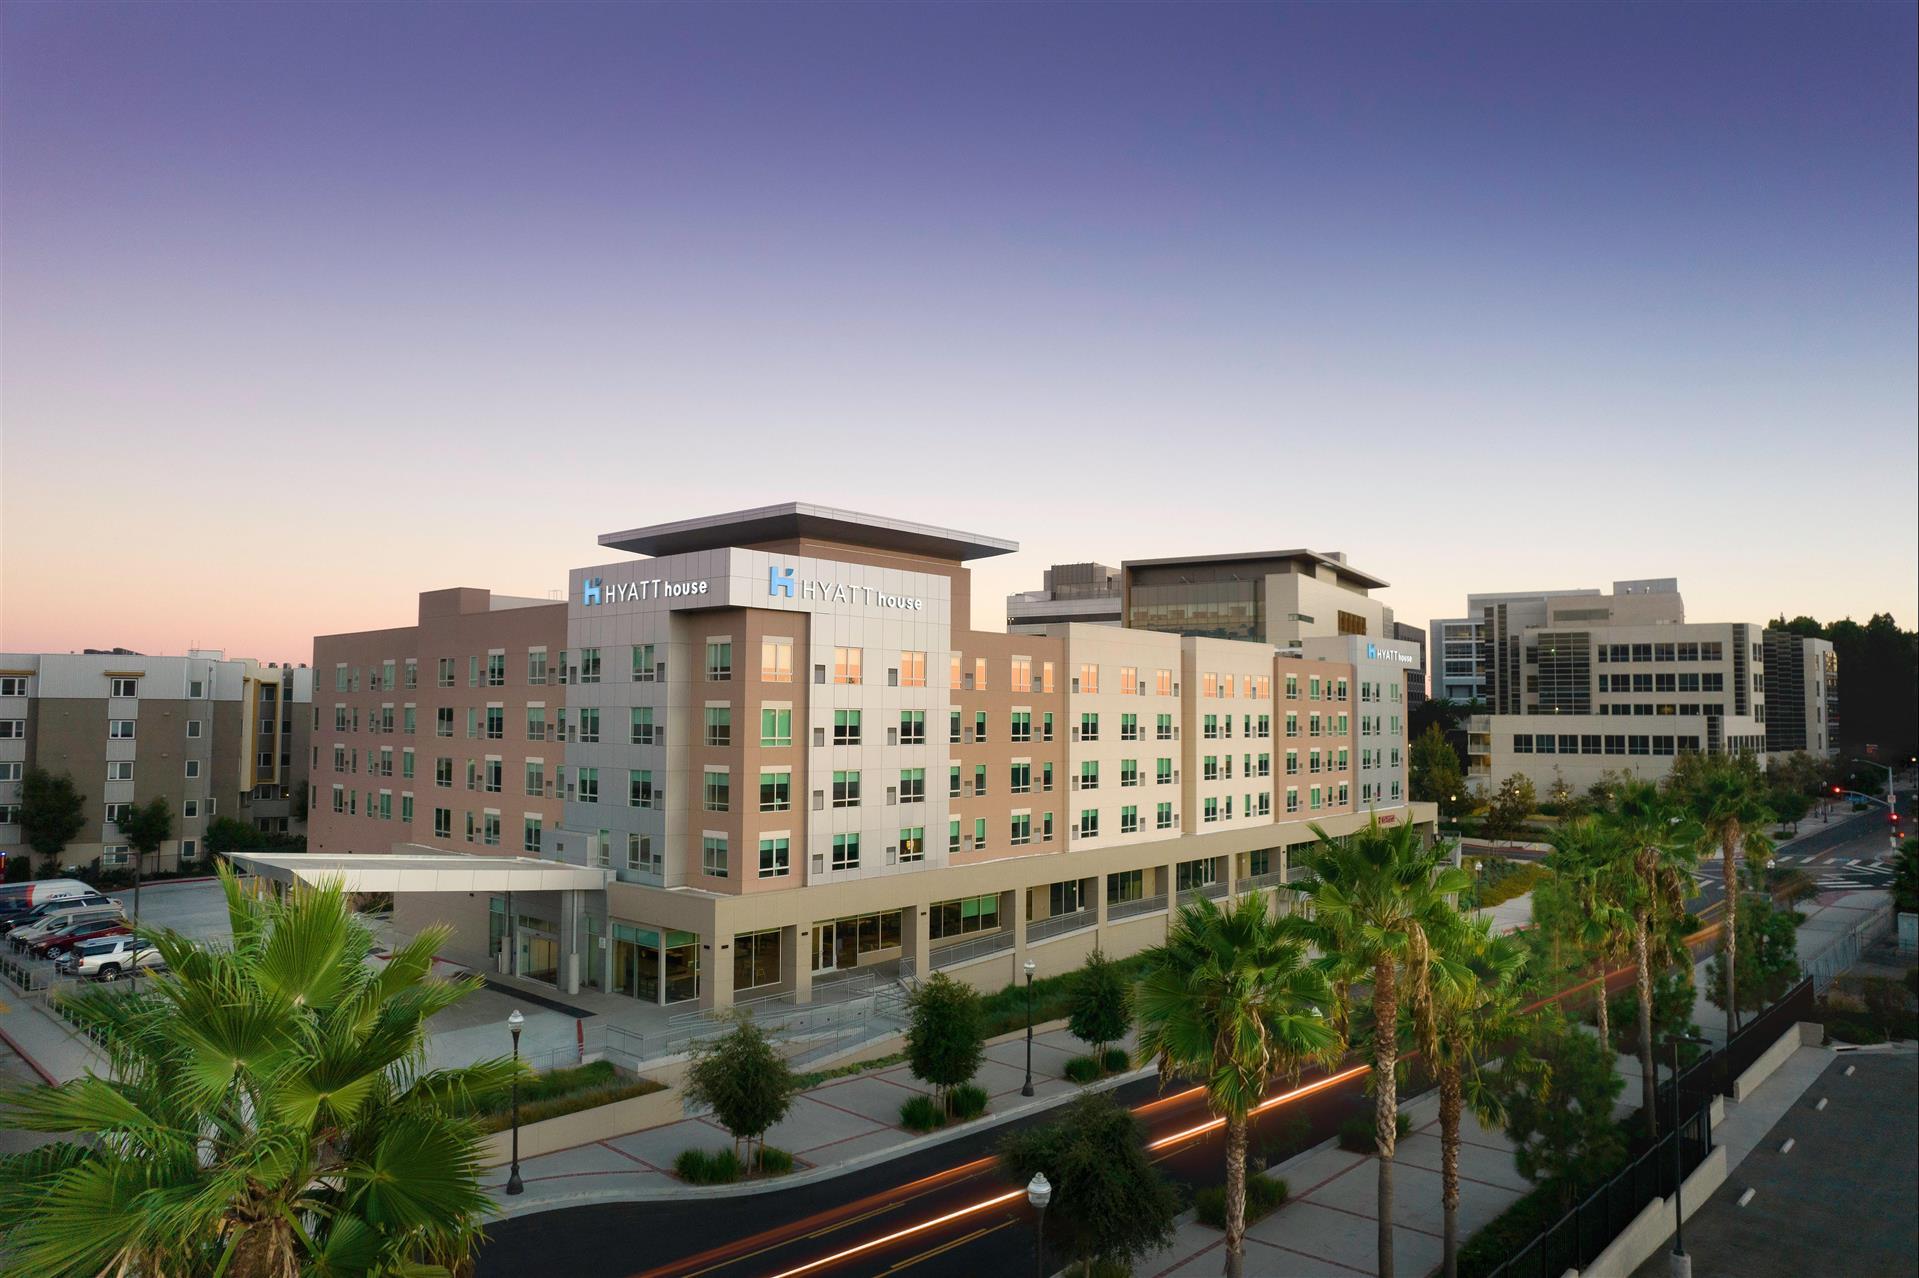 Hyatt House LA - University Medical Center in Los Angeles, CA